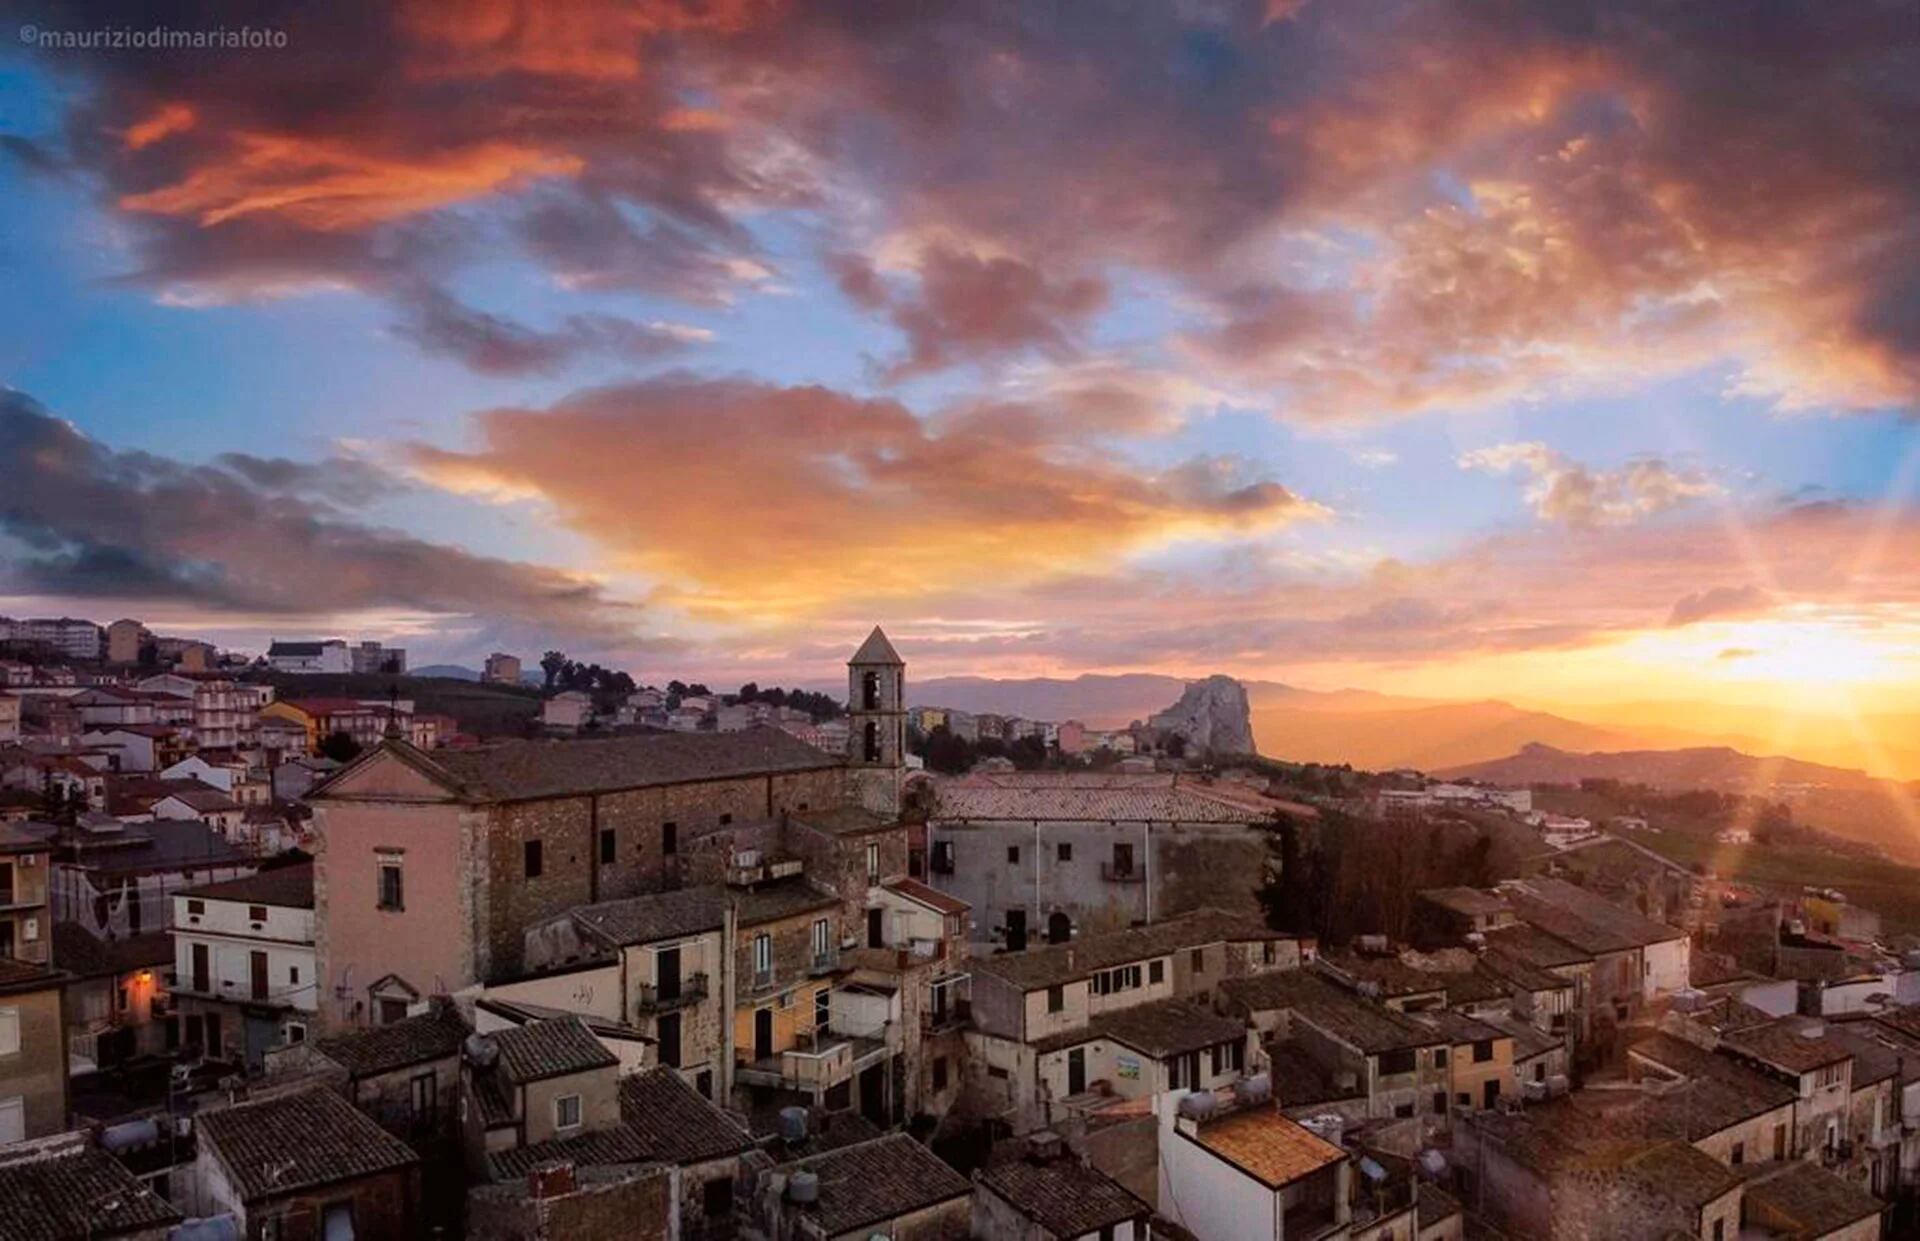 La experiencia de 30 rosarinos que compraron sus casas “a un euro” y van a repoblar una pequeña ciudad de Sicilia 